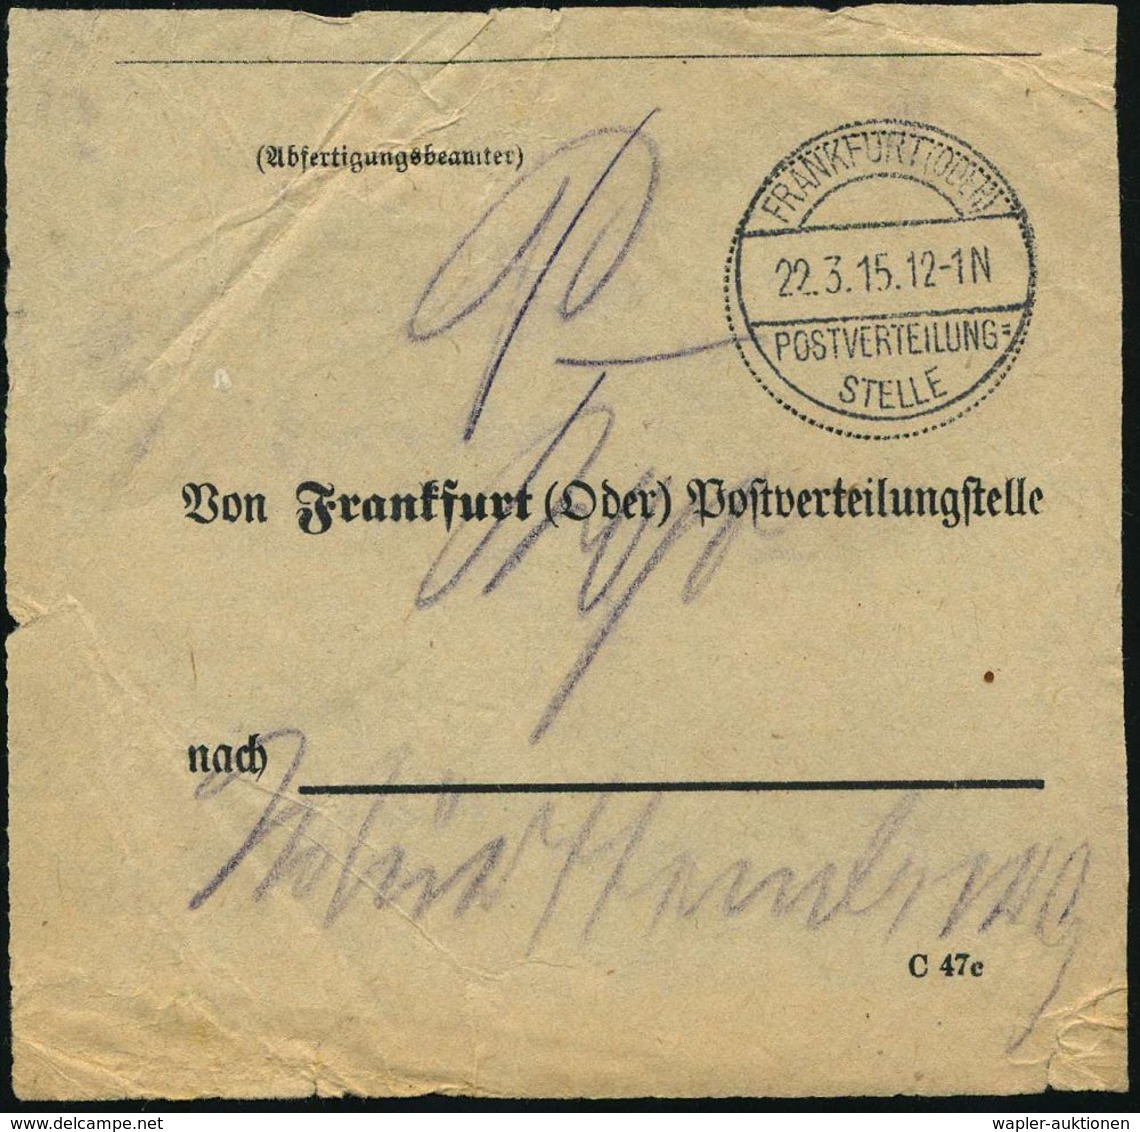 FRANKFURT (ODER)/ POSTVERTEILUNGS=/ STELLE 1915 (22.3.) 1K-Segment Auf Vorbindezettel: Von Frankfurt (Oder) Postverteilu - WO1